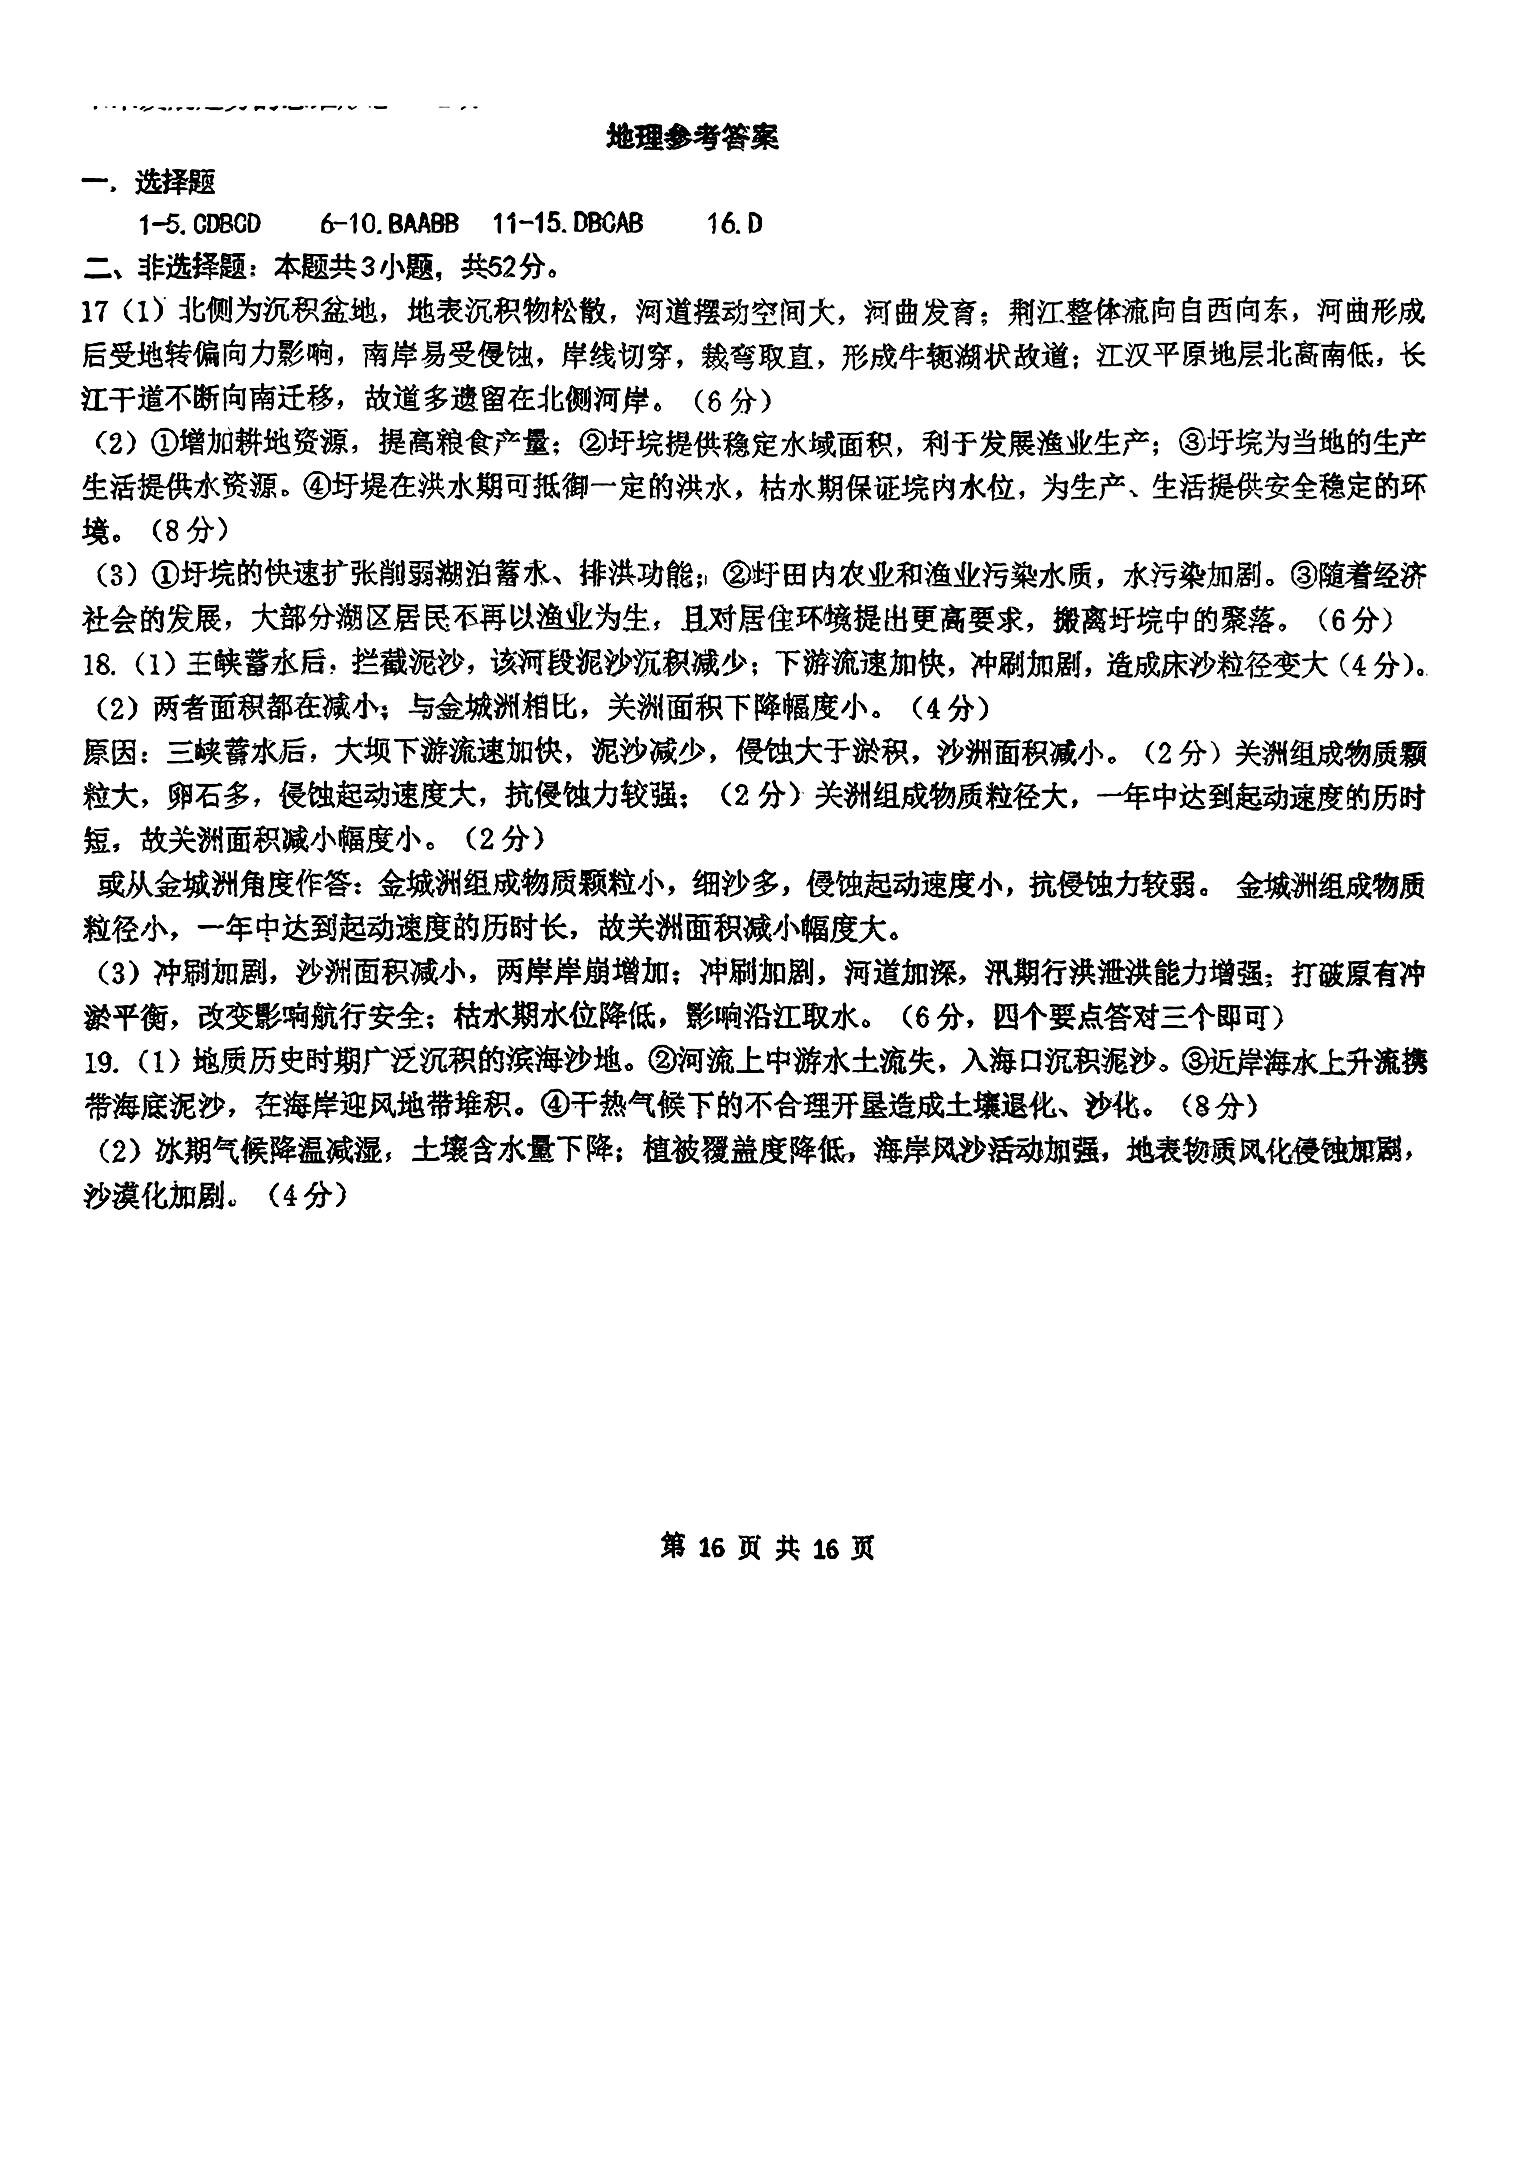 声明：本文由北京高考在线团队（官方微信公众号：京考一点通）排版编辑，内容来源于网络，如有侵权，请及时联系管理员删除。